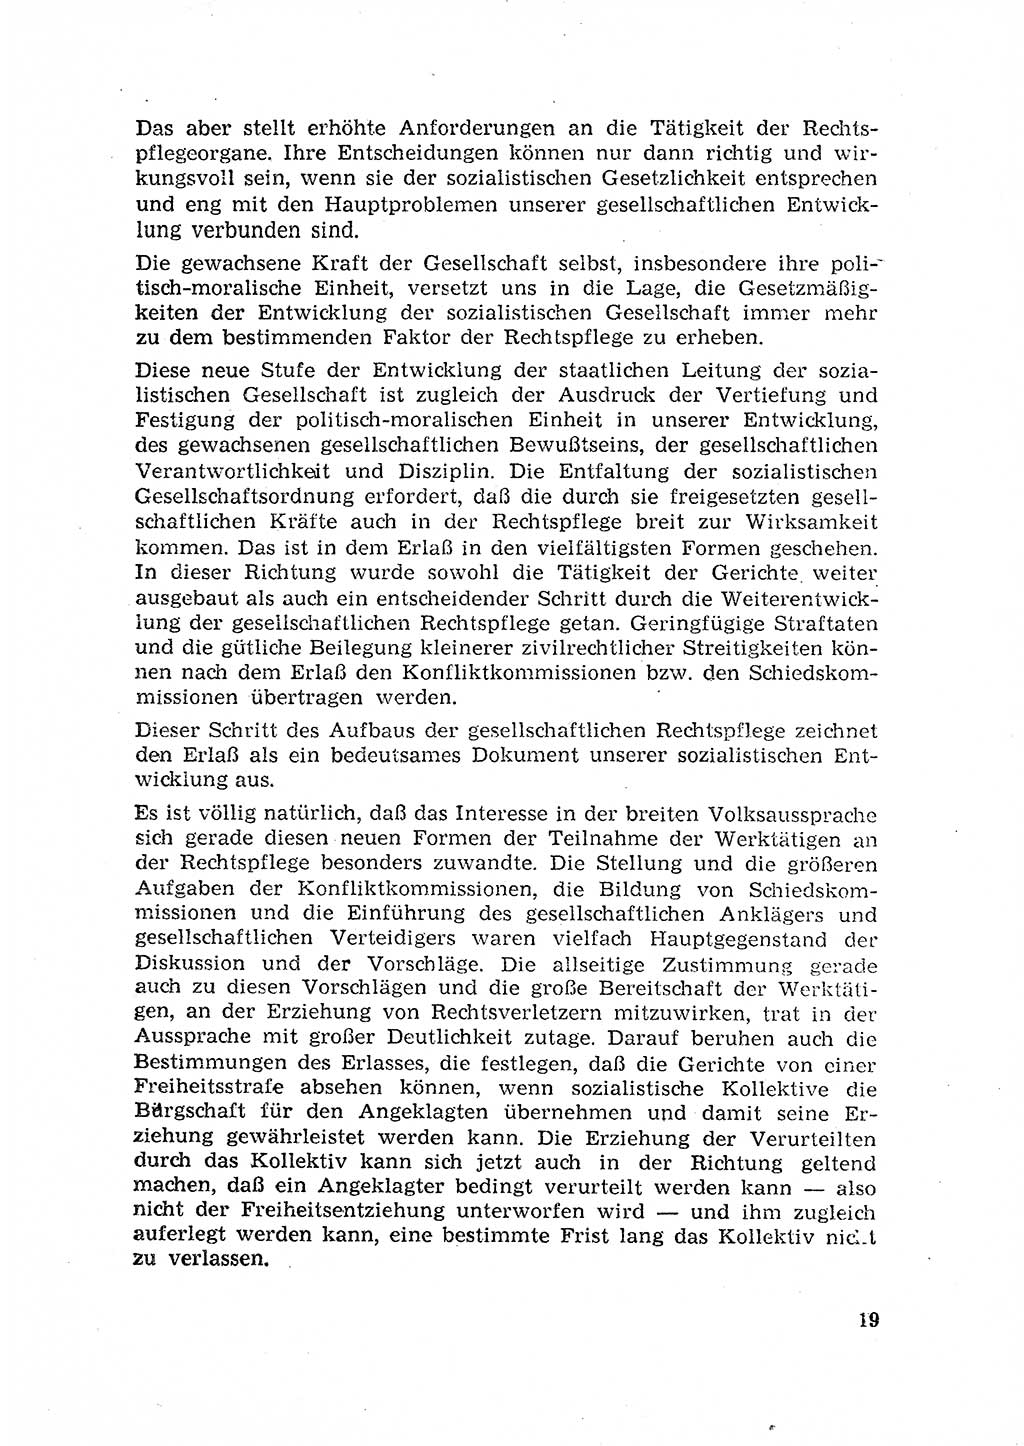 Rechtspflegeerlaß [Deutsche Demokratische Republik (DDR)] 1963, Seite 19 (R.-Pfl.-Erl. DDR 1963, S. 19)